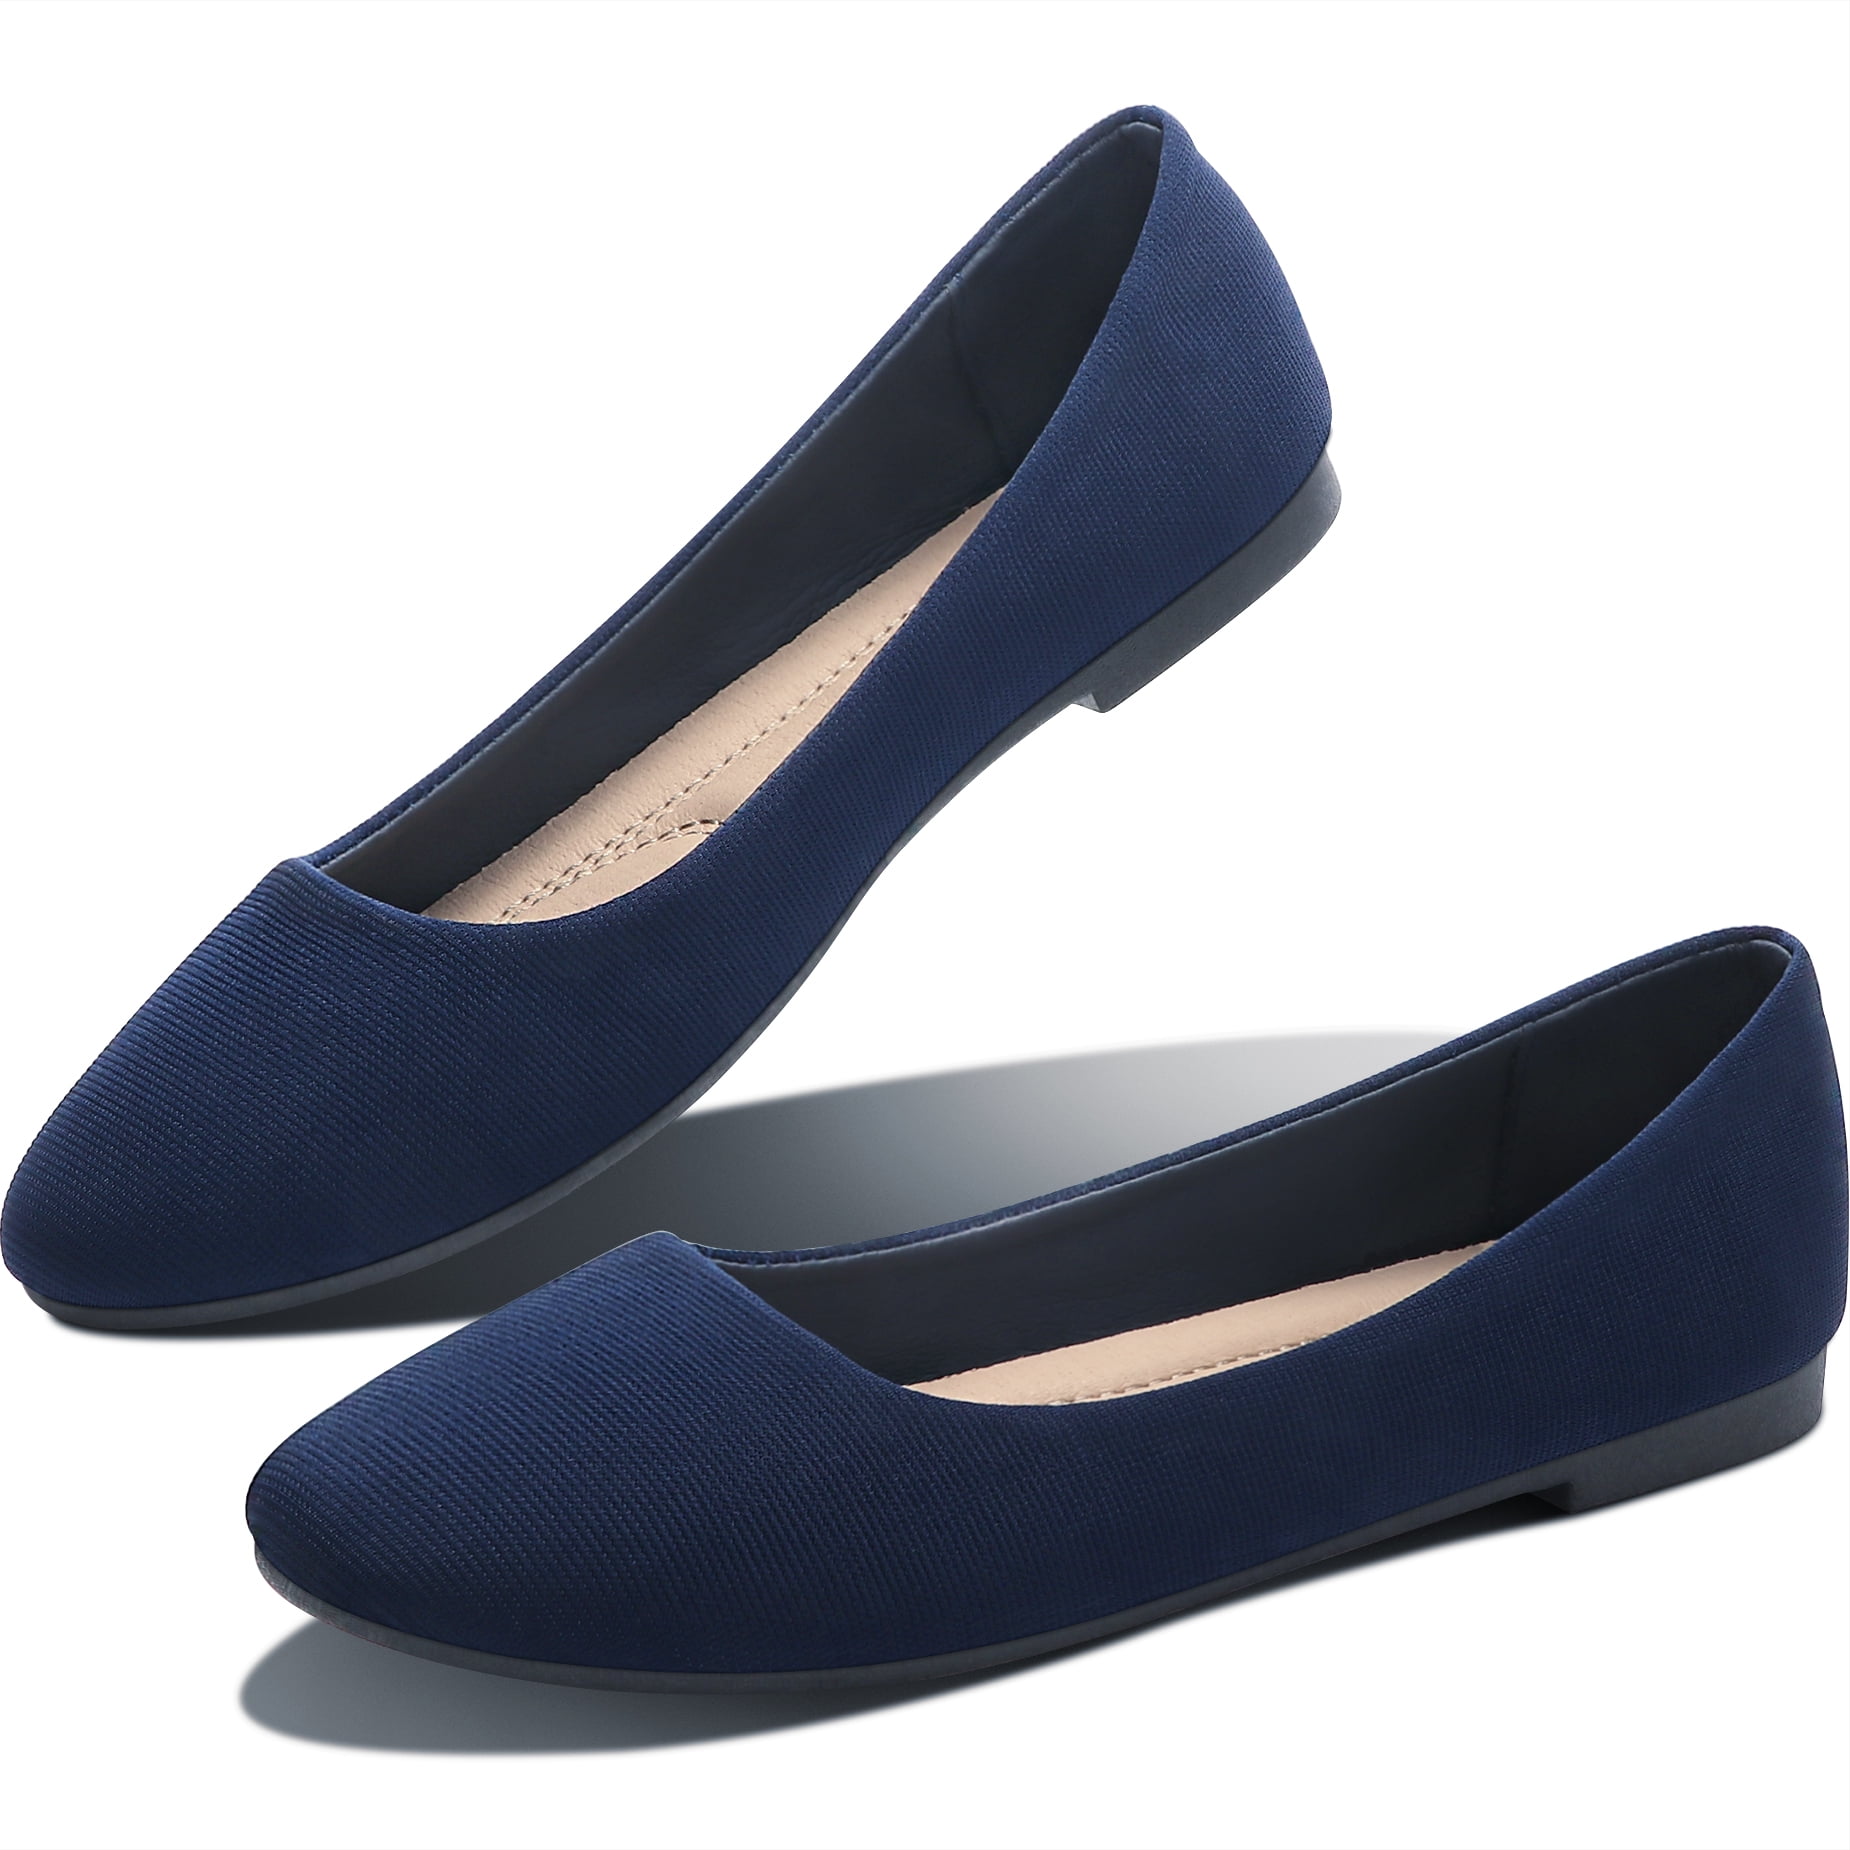 Guzom Woman Summer Flat Shoes Clearance Ballerina Ballet Flats Shoes Casual  Cute Lightweight Soft Sneakers- Dark Blue Size 6.5 